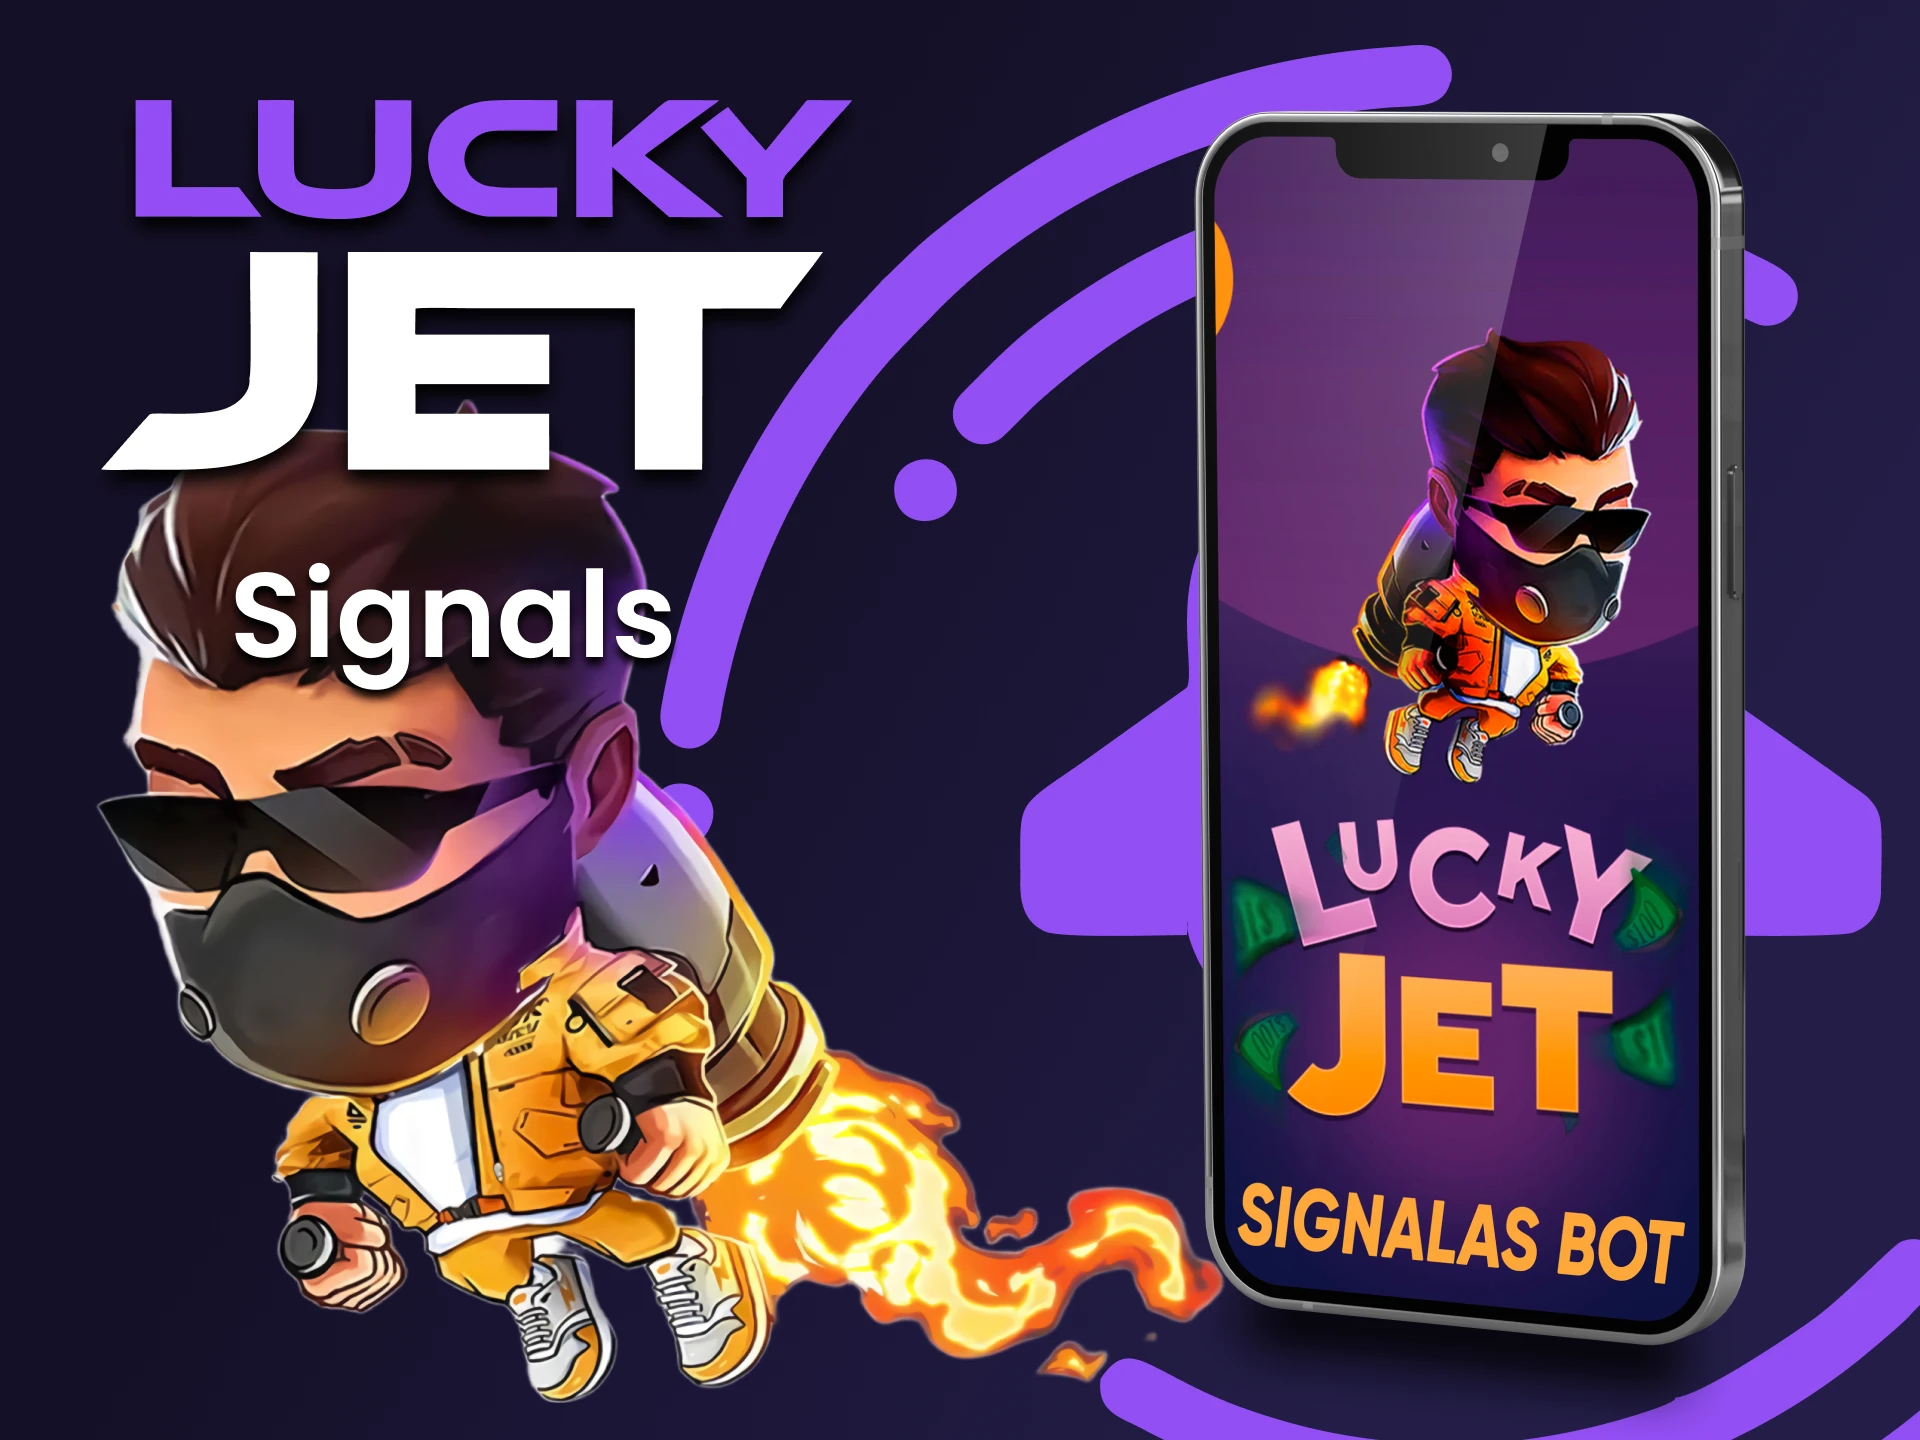 Utilice la señal para jugar Lucky Jet se puede utilizar a través de la aplicación.